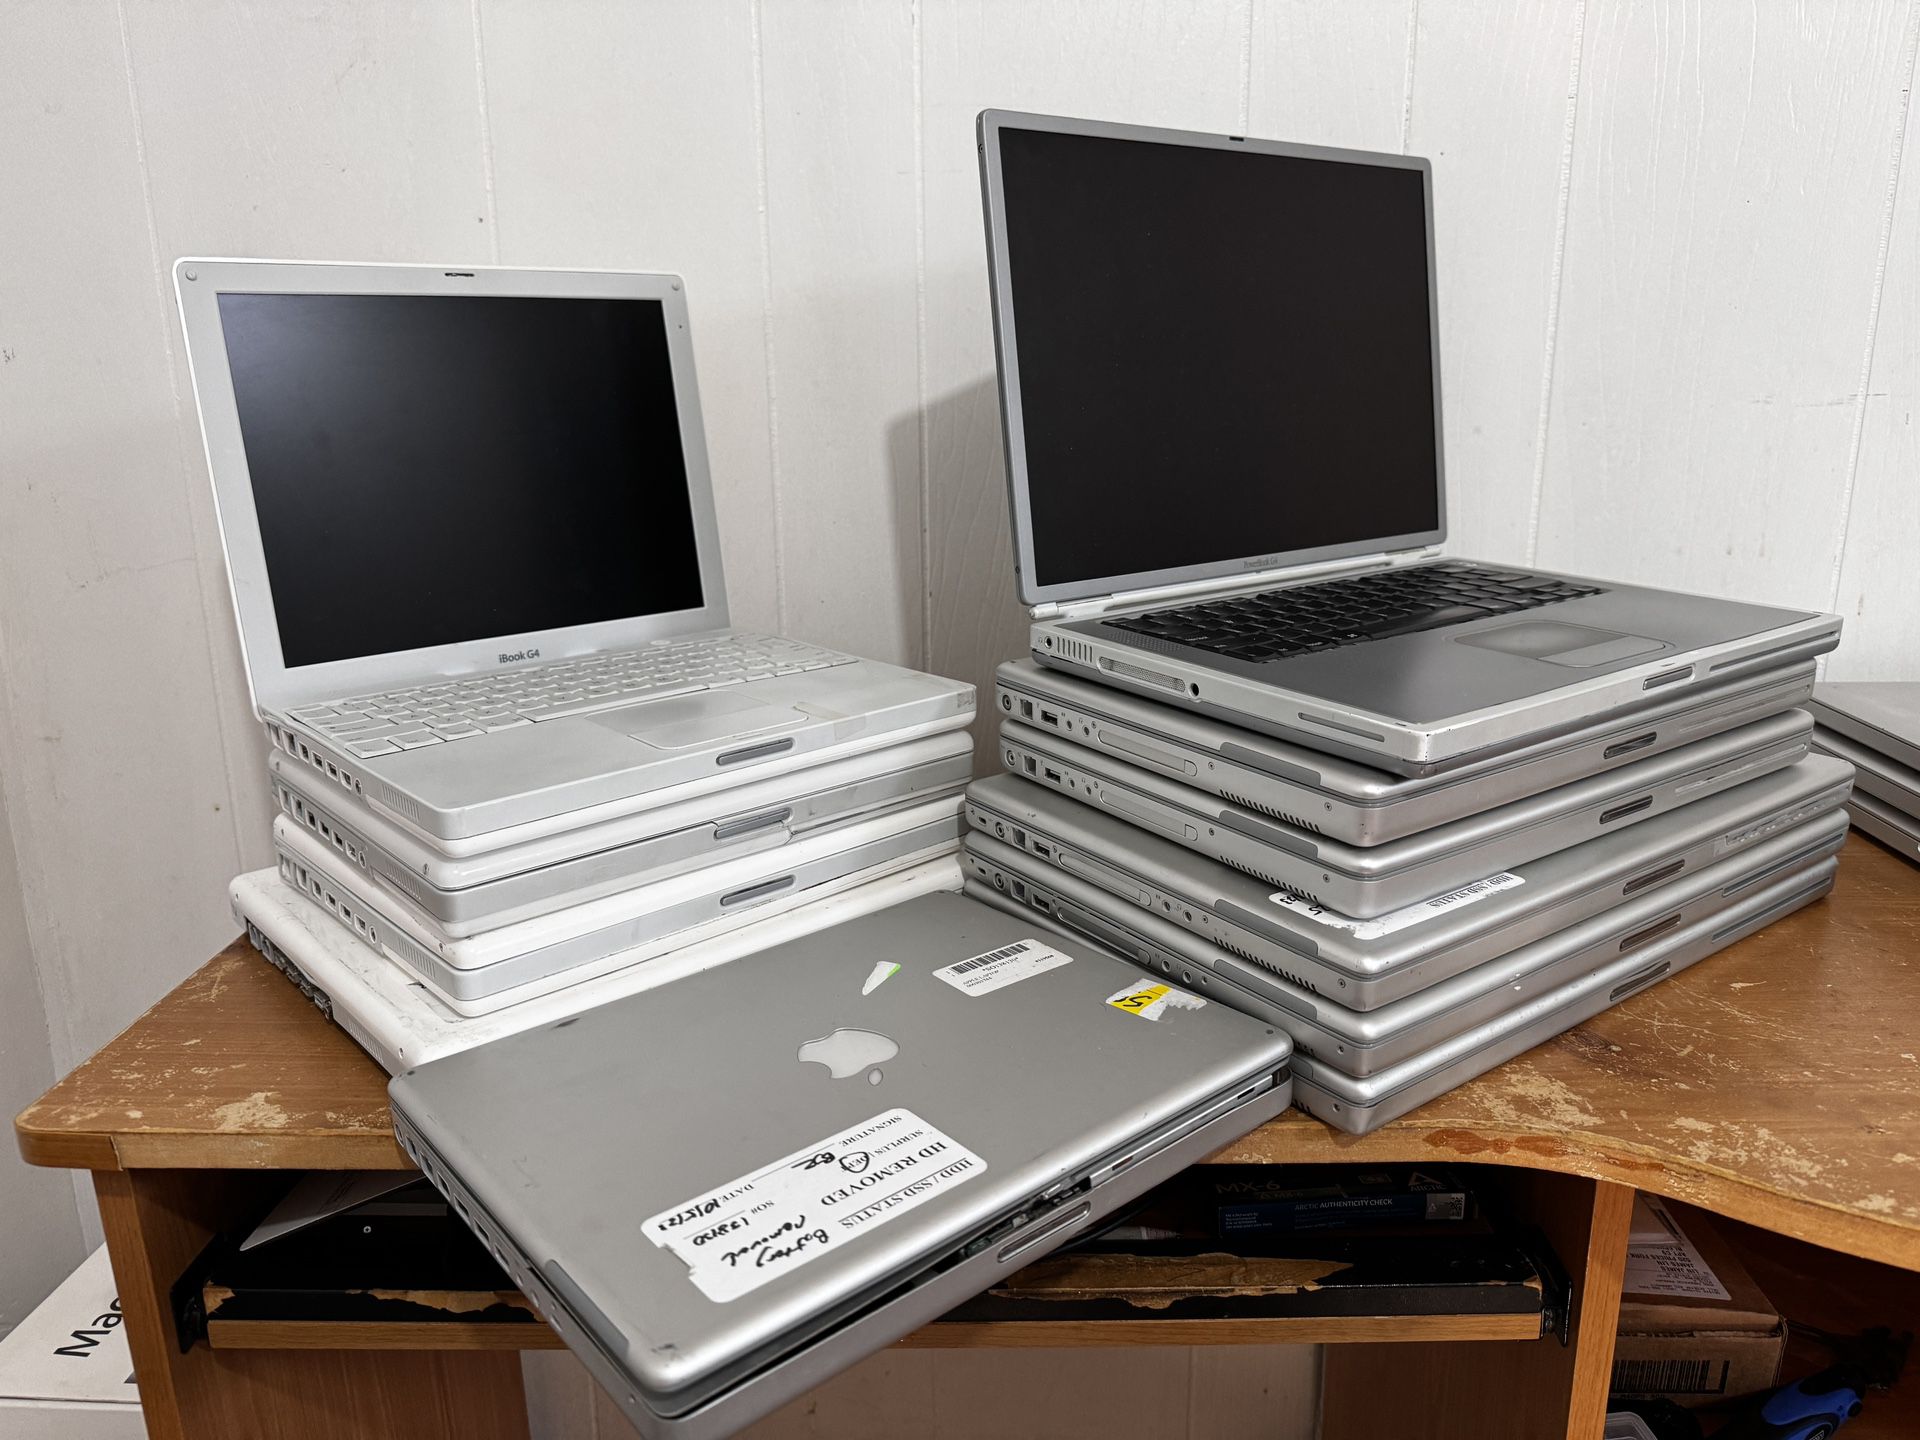 Apple PowerBook iBook G4 (Lot of 11) Vintage Apple Laptops for parts or repair